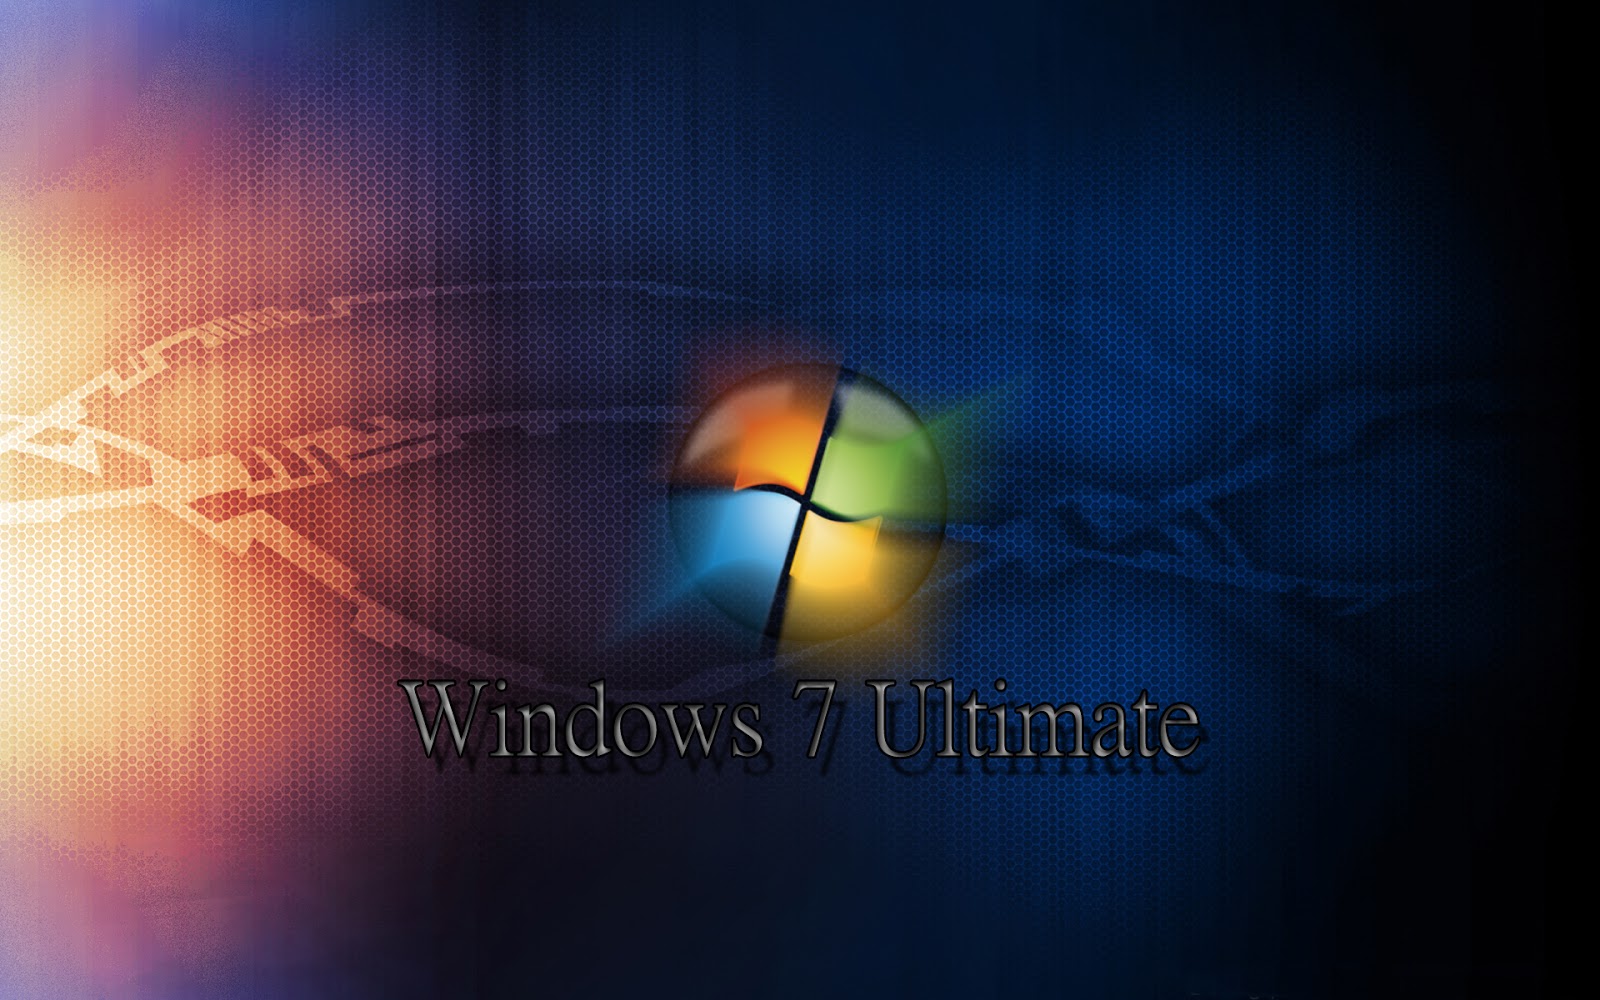 Виндовс 7 зверь. Виндовс 7. Windows 7 рабочий стол. Заставка виндовс. Заставка Windows 7.